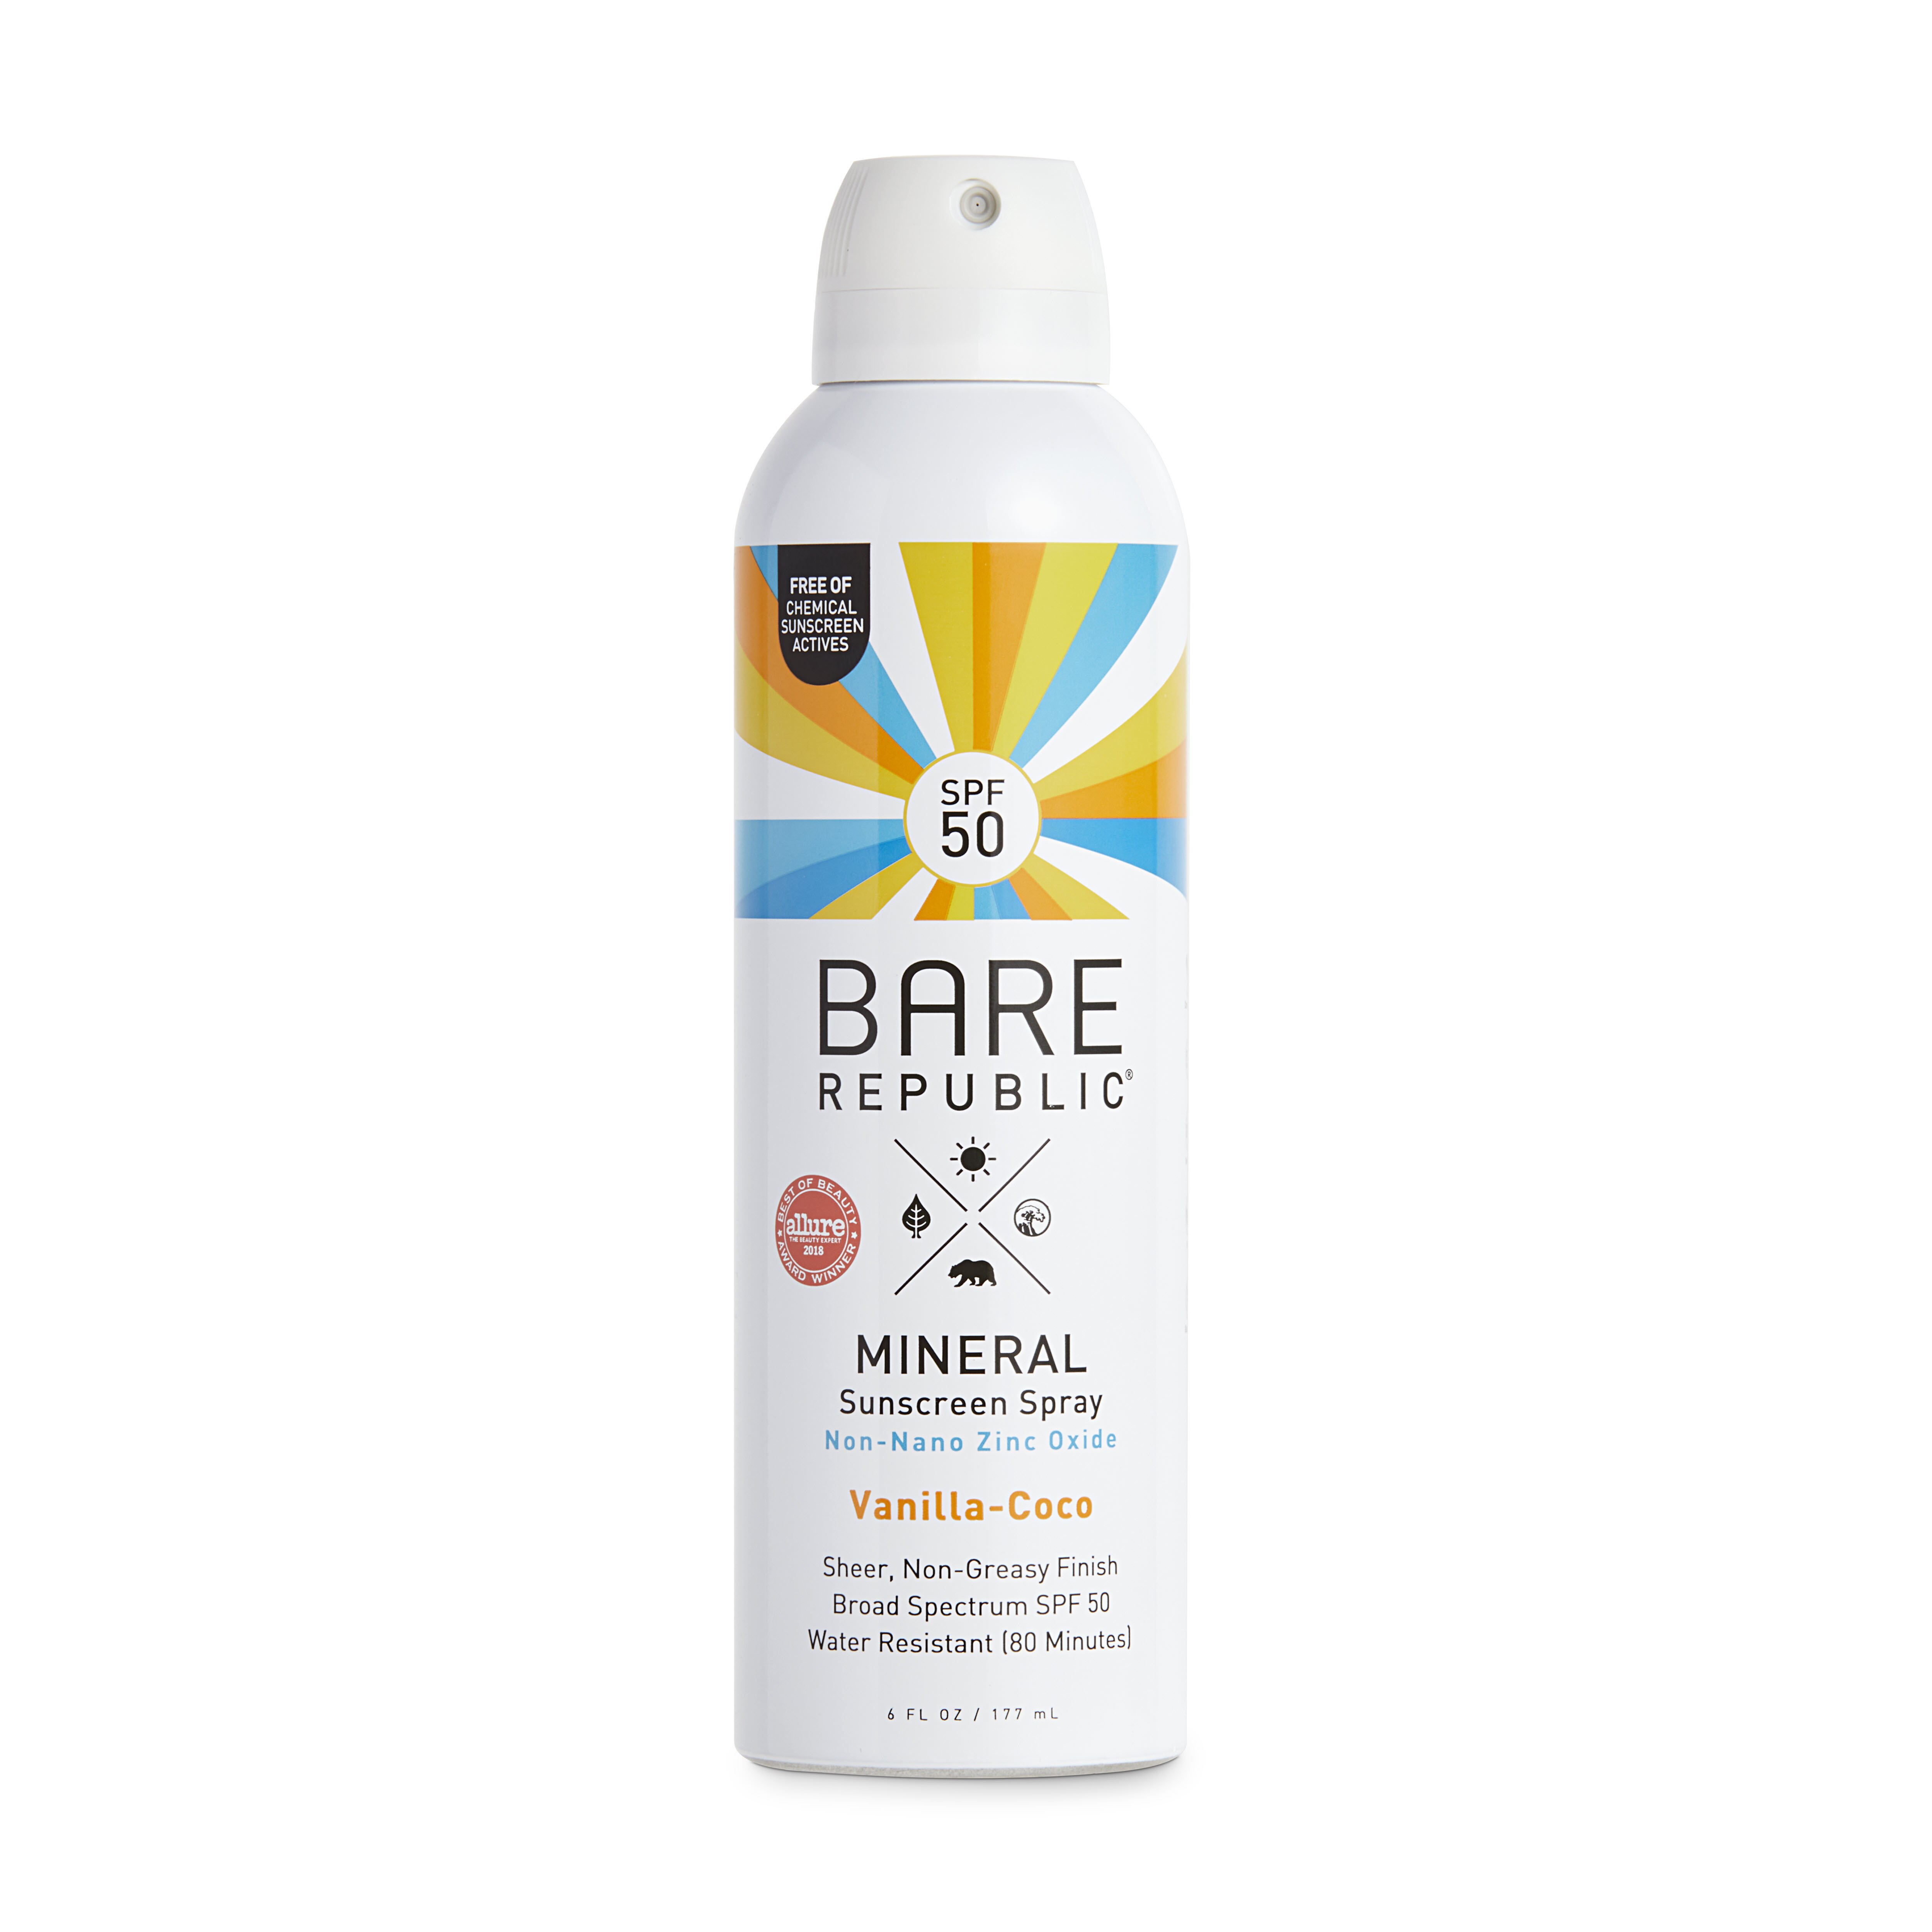 Bare Republic Mineral Body Sunscreen Spray SPF 50, Vanilla-Coco, 6 OZ